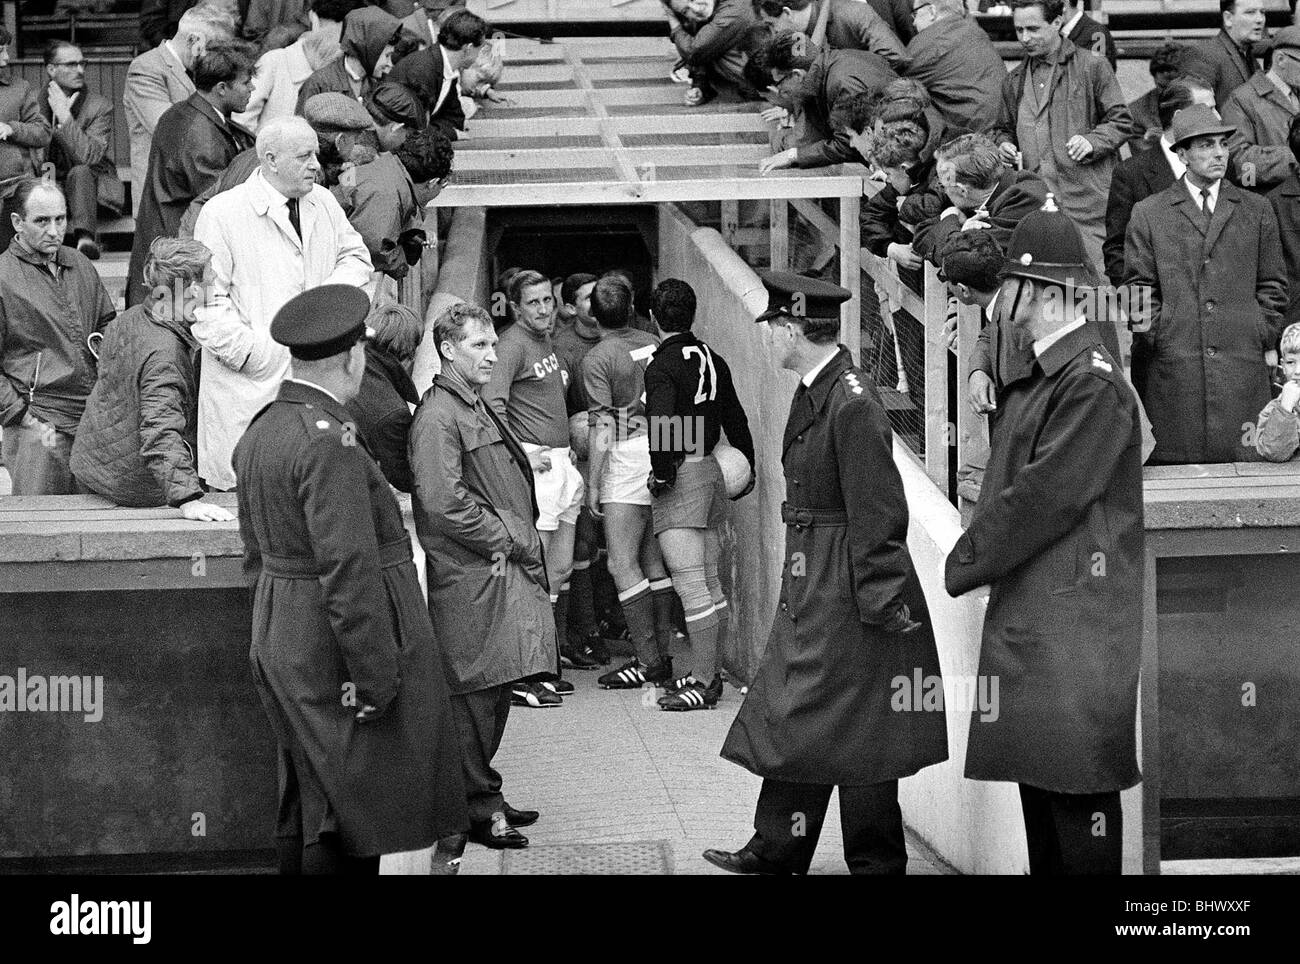 Welt Cup Russland gegen Chile 20. Juli 1966 kommen die beiden Teams auf dem Feld Fans Peer über die Seiten des Tunnels zu sehen, die Spieler W7028 5a Angestellter Fotograf Stockfoto